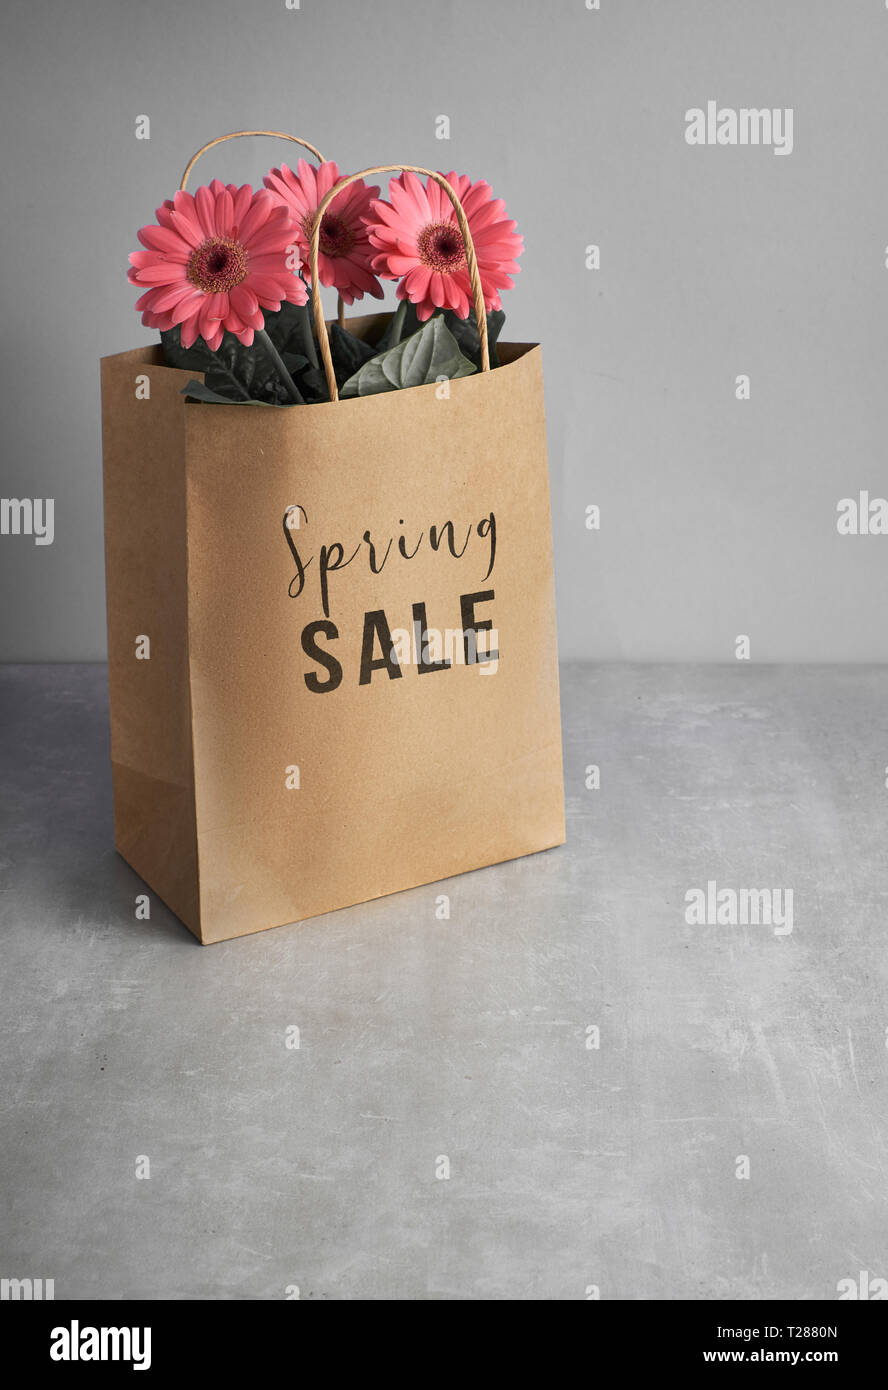 Gerbera fleurs corail daisy et d'artisanat sacs papper sur papier vert, fond printemps vente concept image avec texte 'Spring sale' sur le sac Banque D'Images